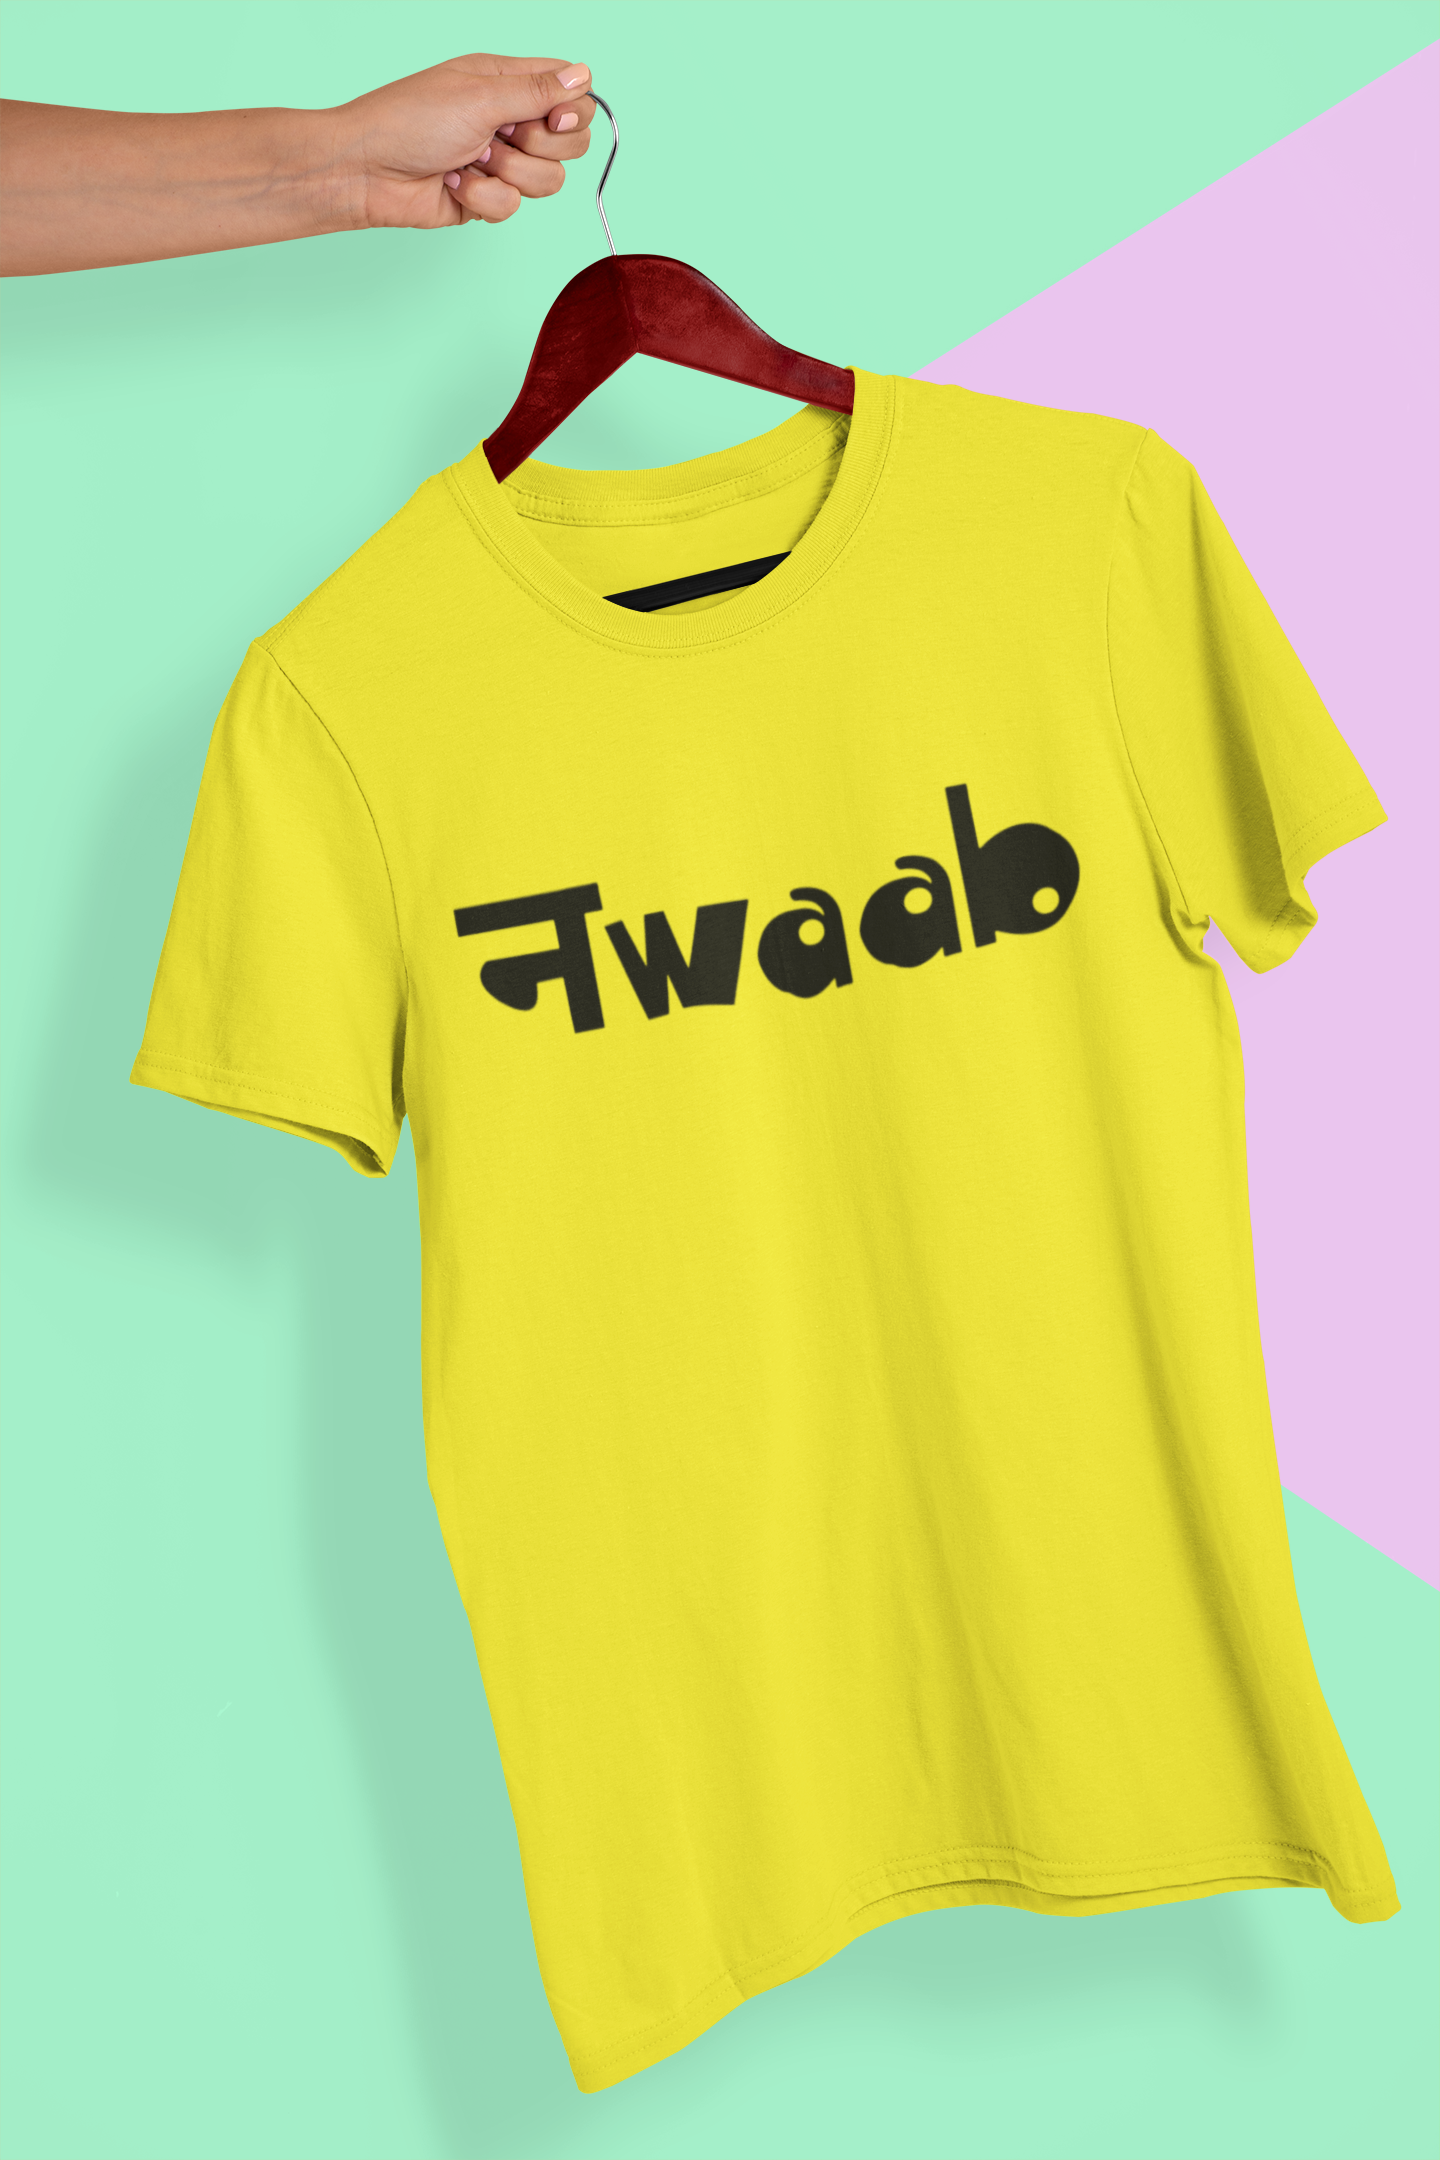 Nwaab Mens Half Sleeves T-shirt- FunkyTeesClub